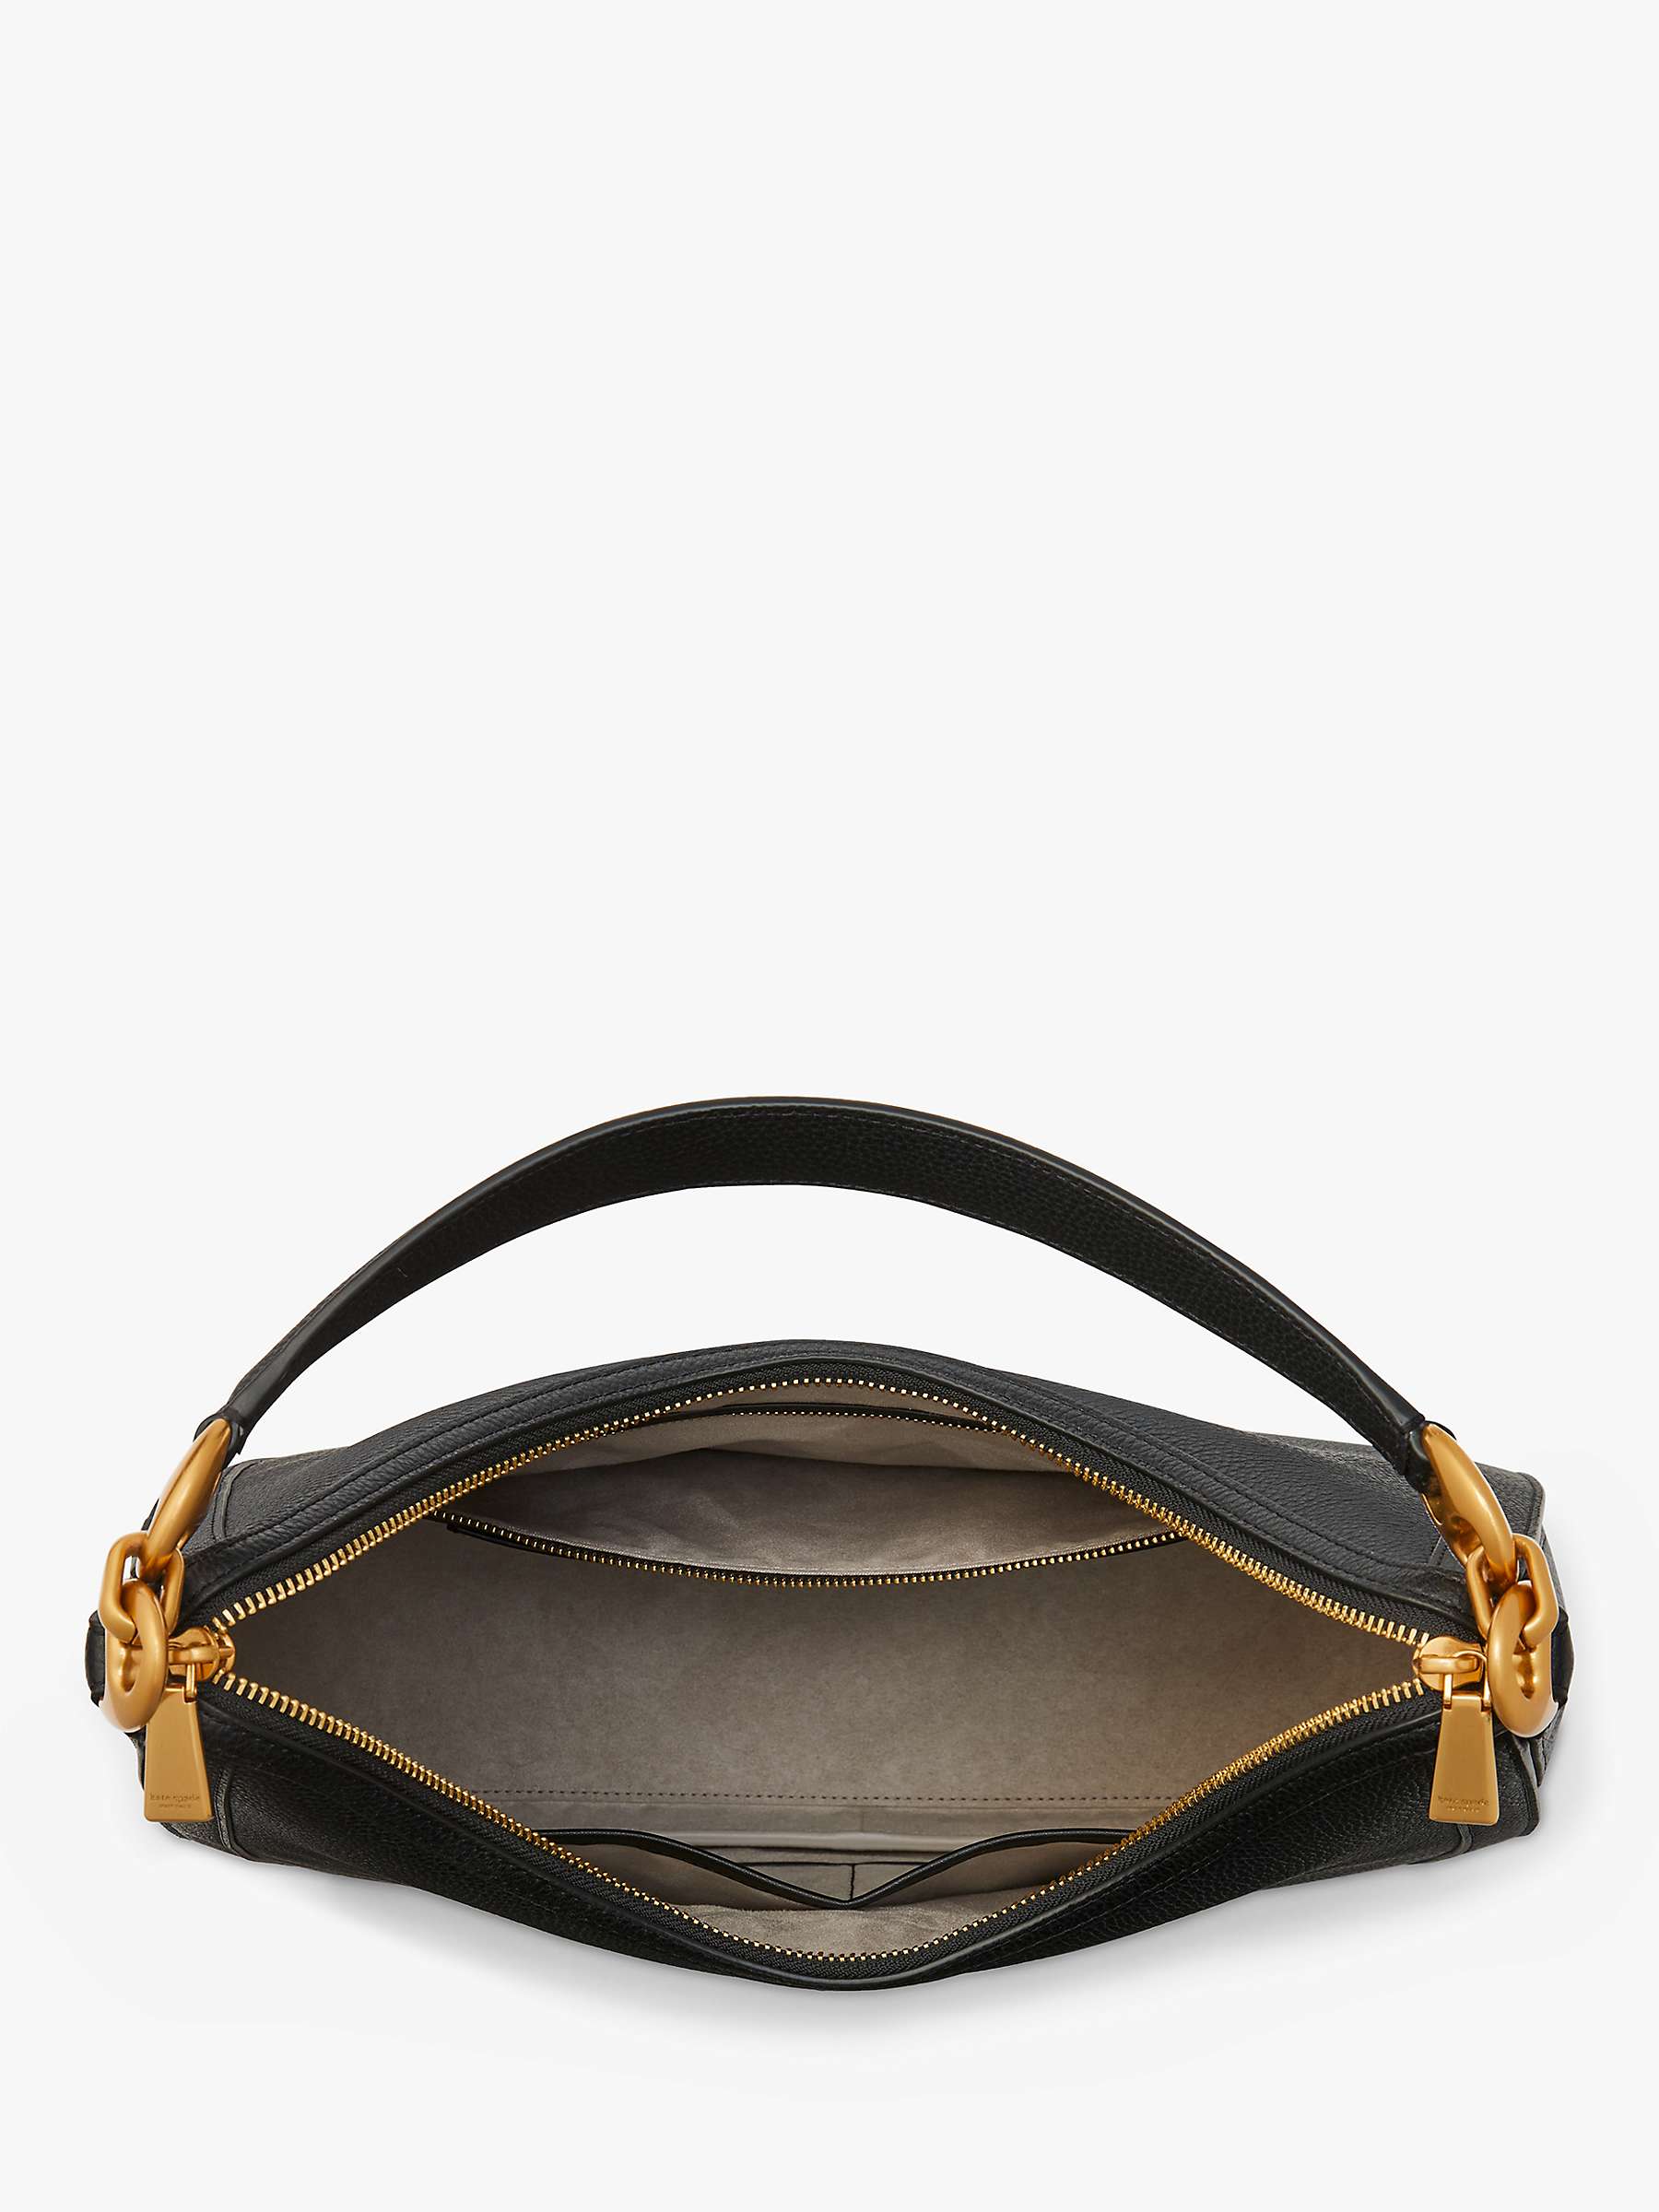 Buy kate spade new york Gramercy Leather Shoulder Bag Online at johnlewis.com